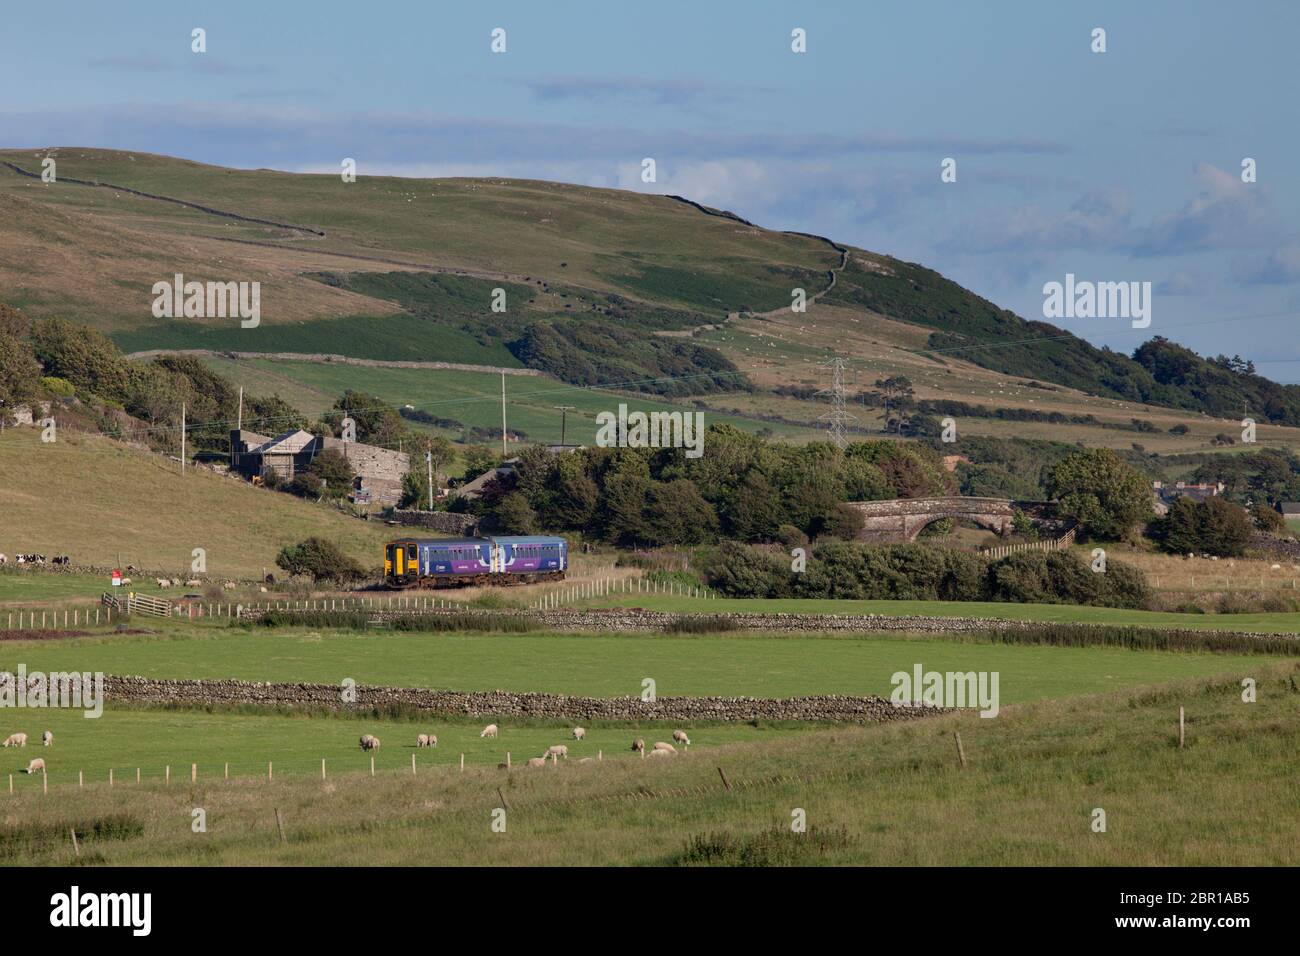 2 treni a carrello singolo della classe 153 della ferrovia nord che attraversano la campagna a Silecroft sulla linea ferroviaria panoramica della costa Cumbriana Foto Stock